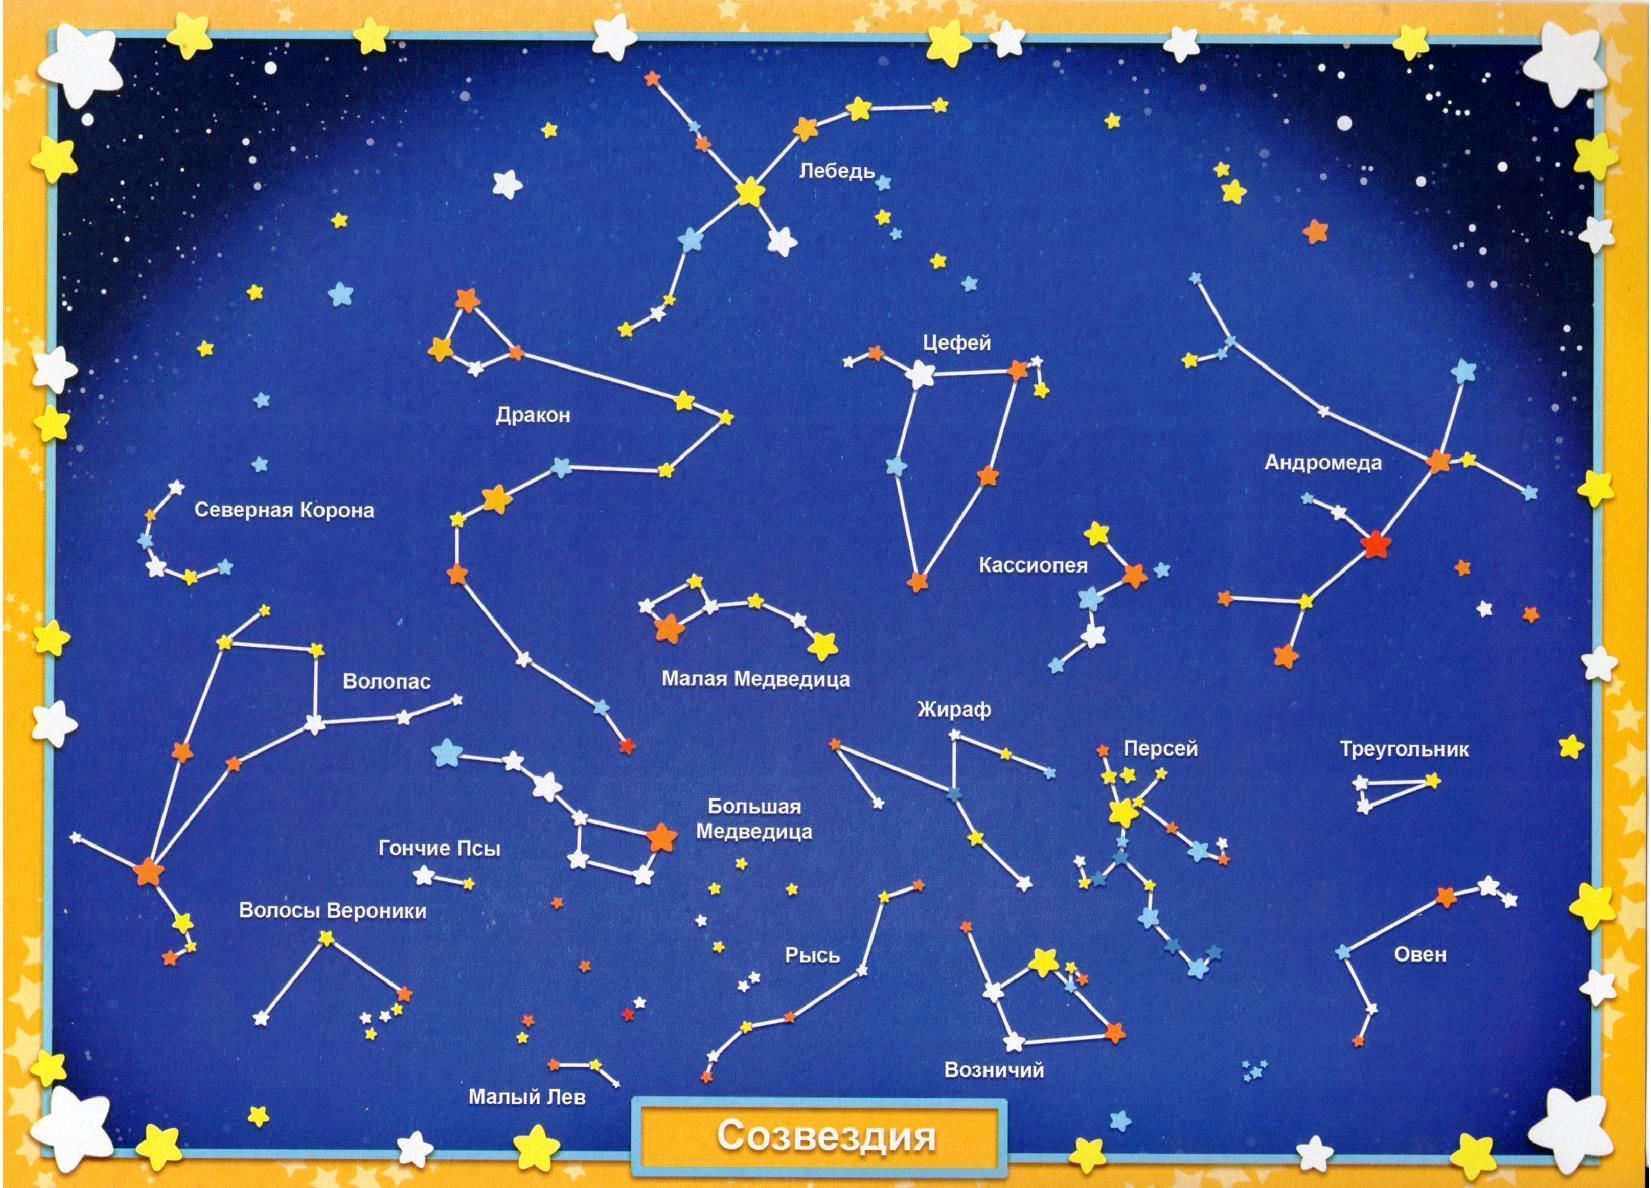 Созвездие википедия. Схематическое изображение созвездий для детей и их названия. Звездное небо созвездия для детей. Карта звездного неба с названиями созвездий. Звездноемнебл созвездия.